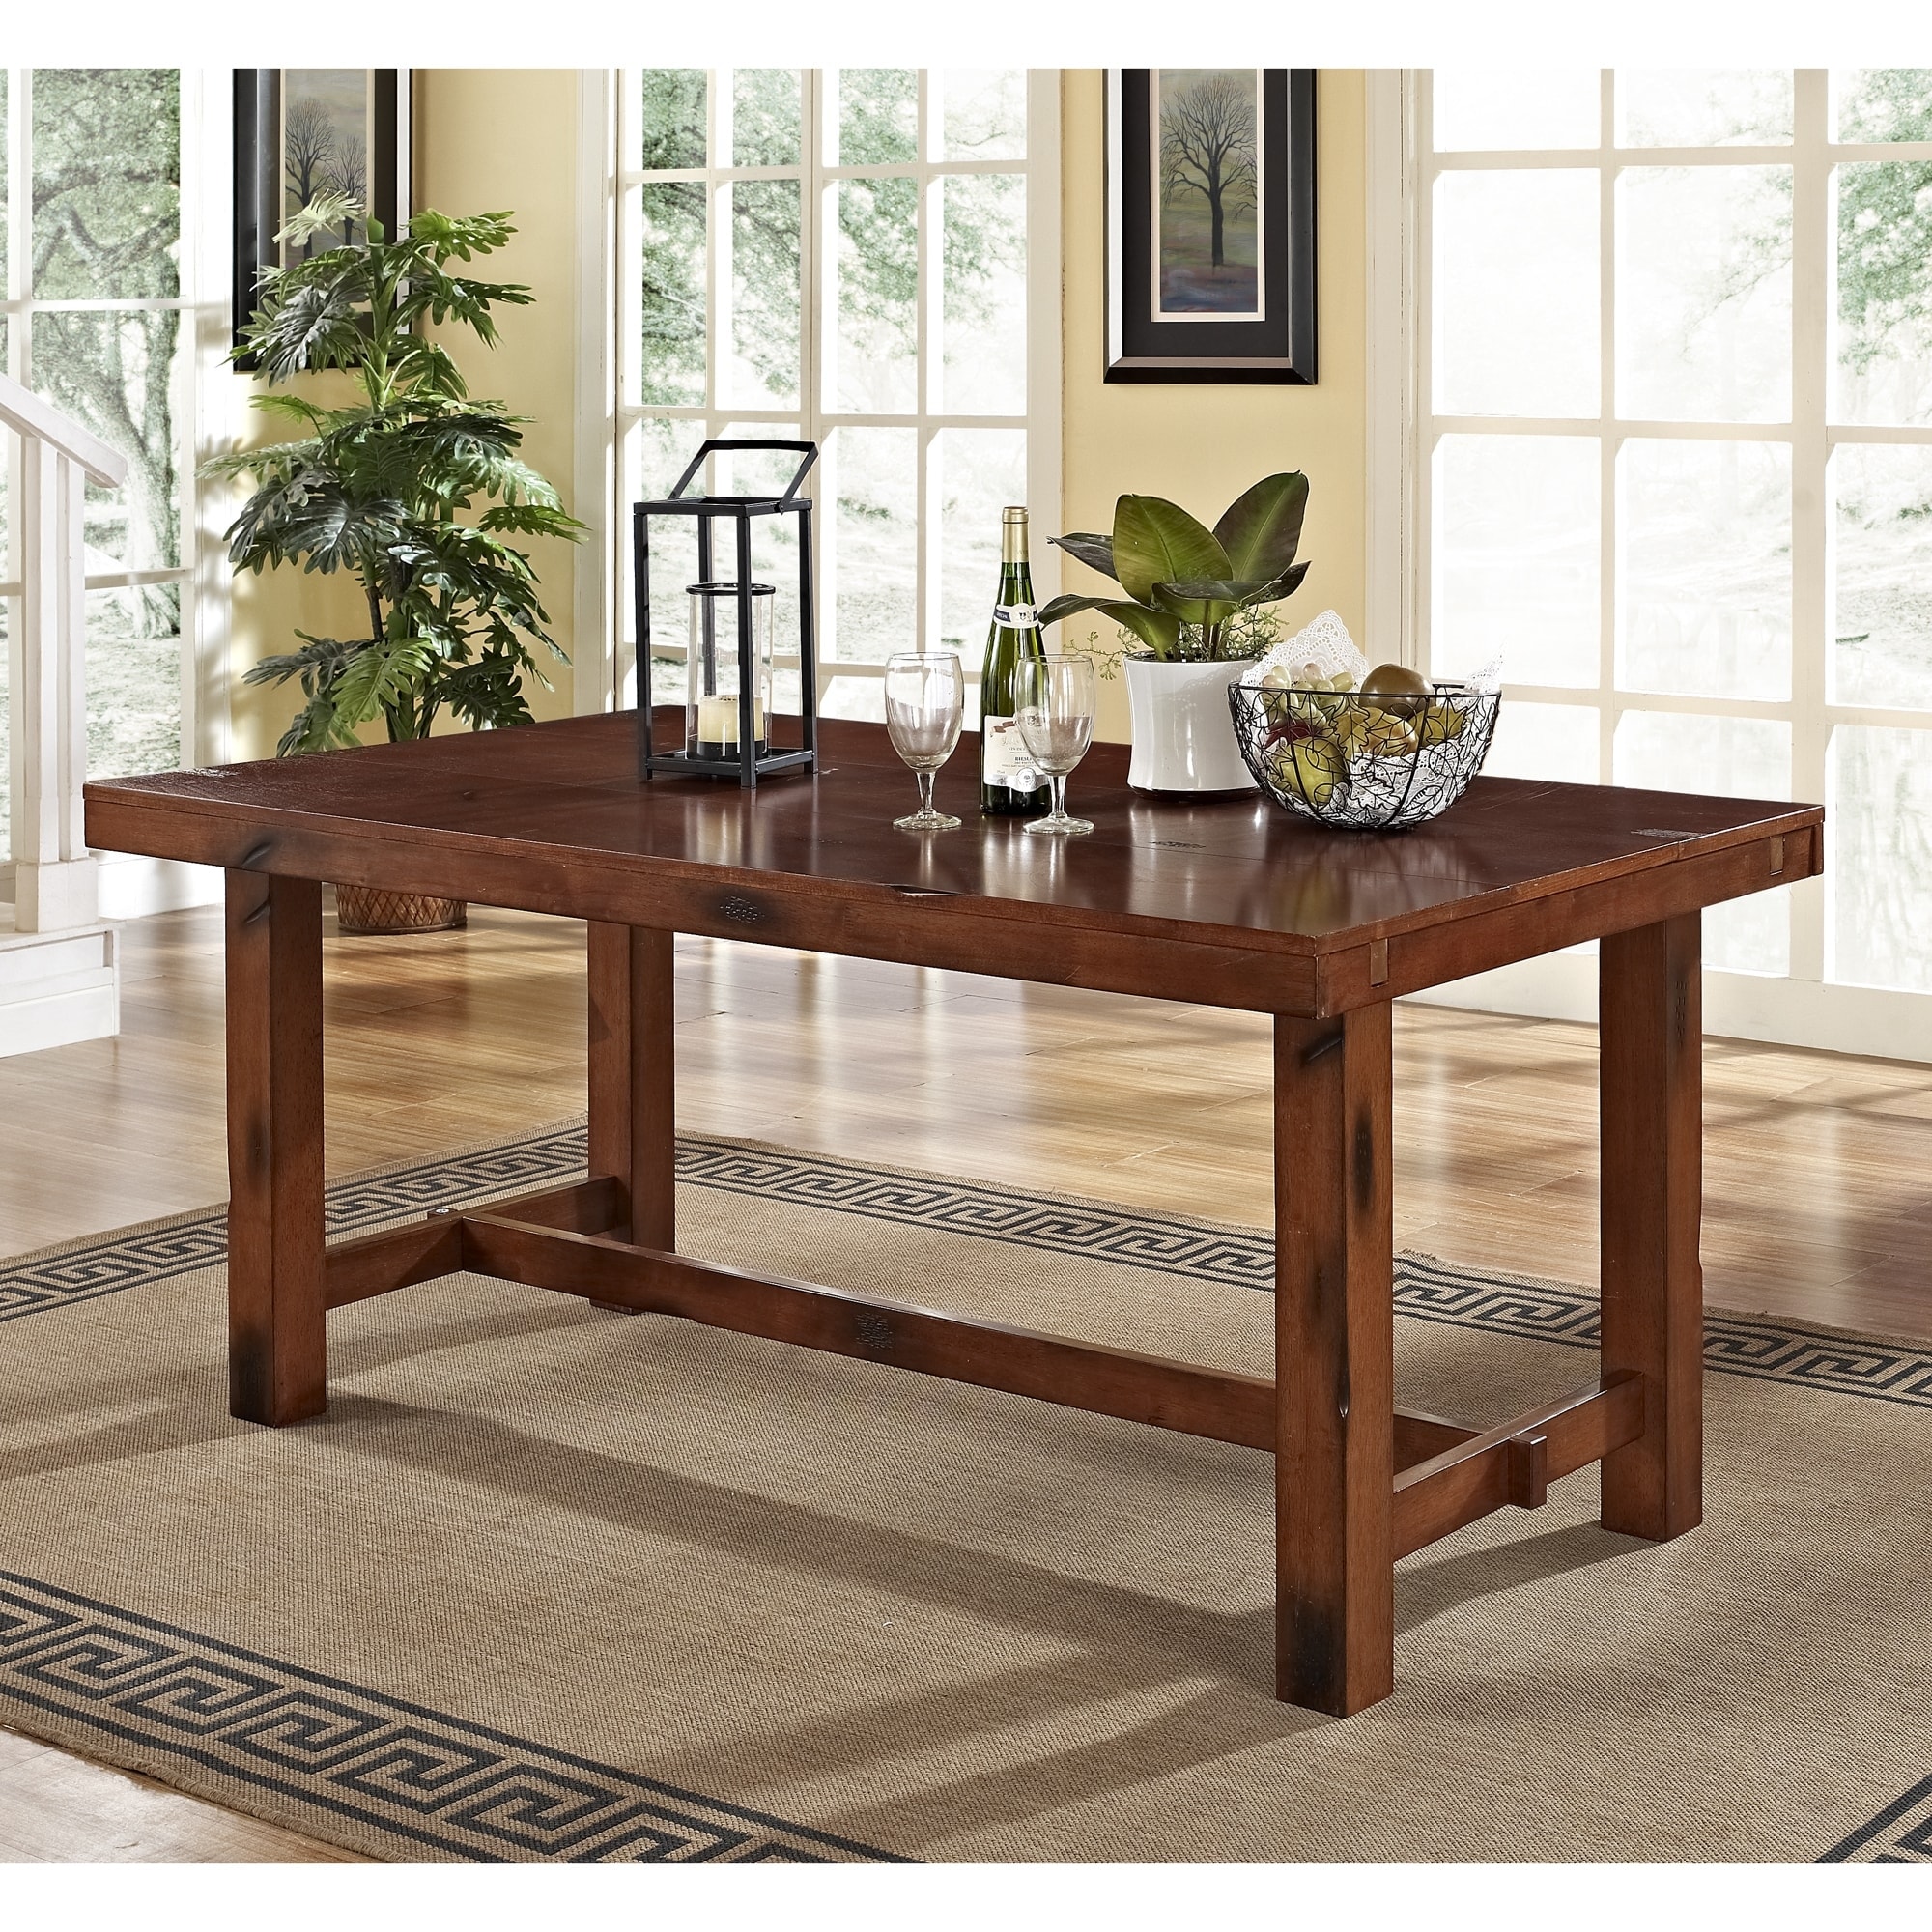 Обеденные столы от производителя. Стол обеденный. Стол деревянный обеденный. Стол кухонный дерево. Стол обеденный деревянный большой.